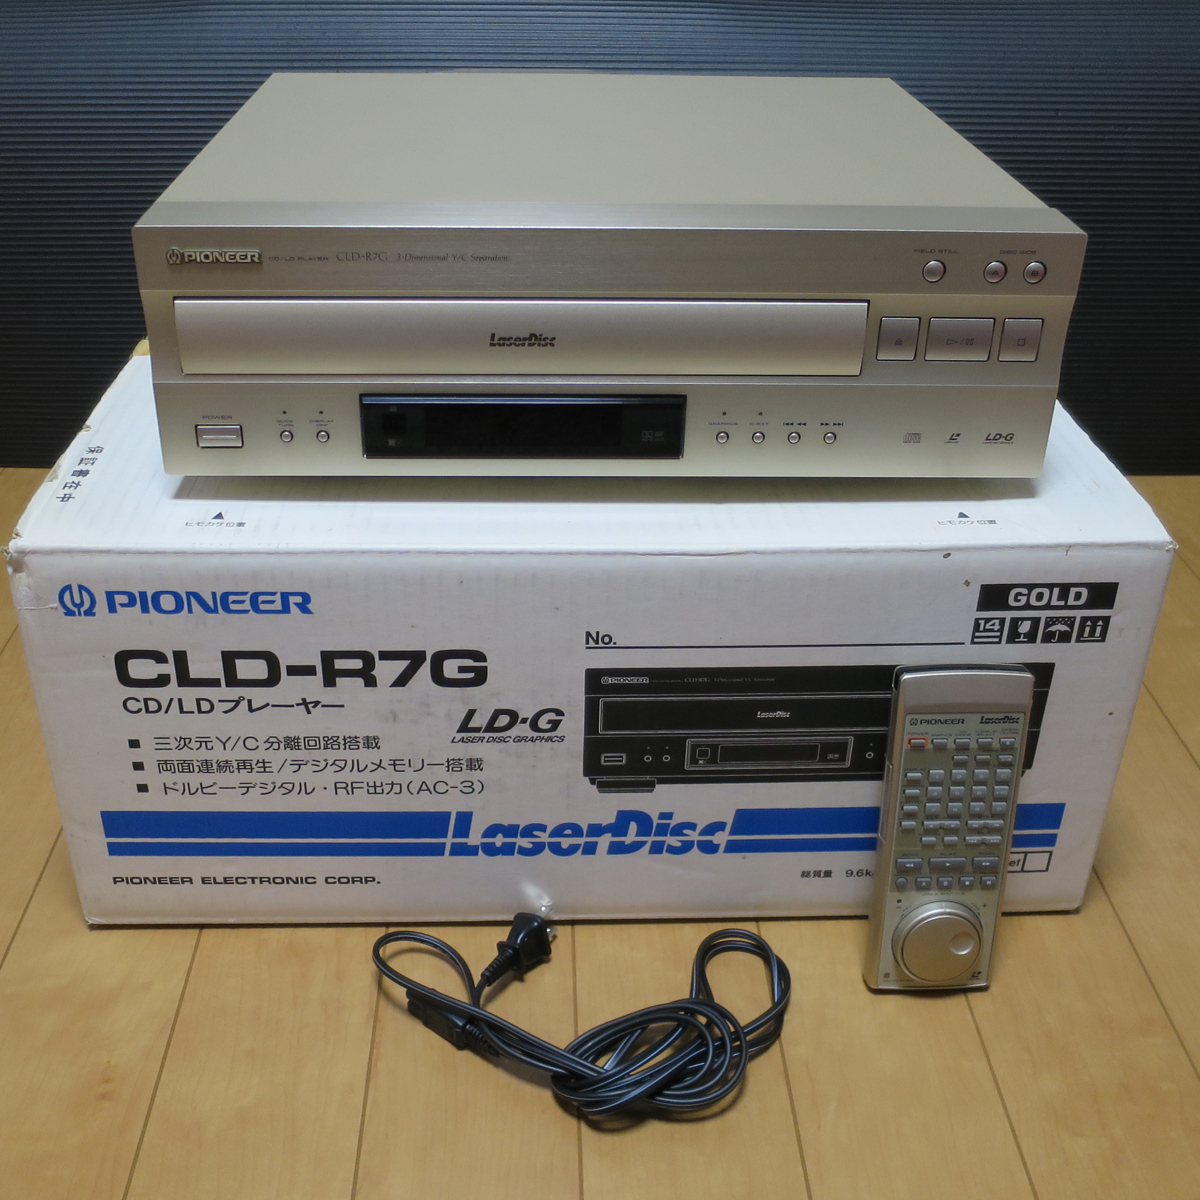 PIONEER パイオニア LDプレーヤー CLD-R7G CD/LD PLAYER レーザーディスク リモコン 電源コード 元箱 有の画像1